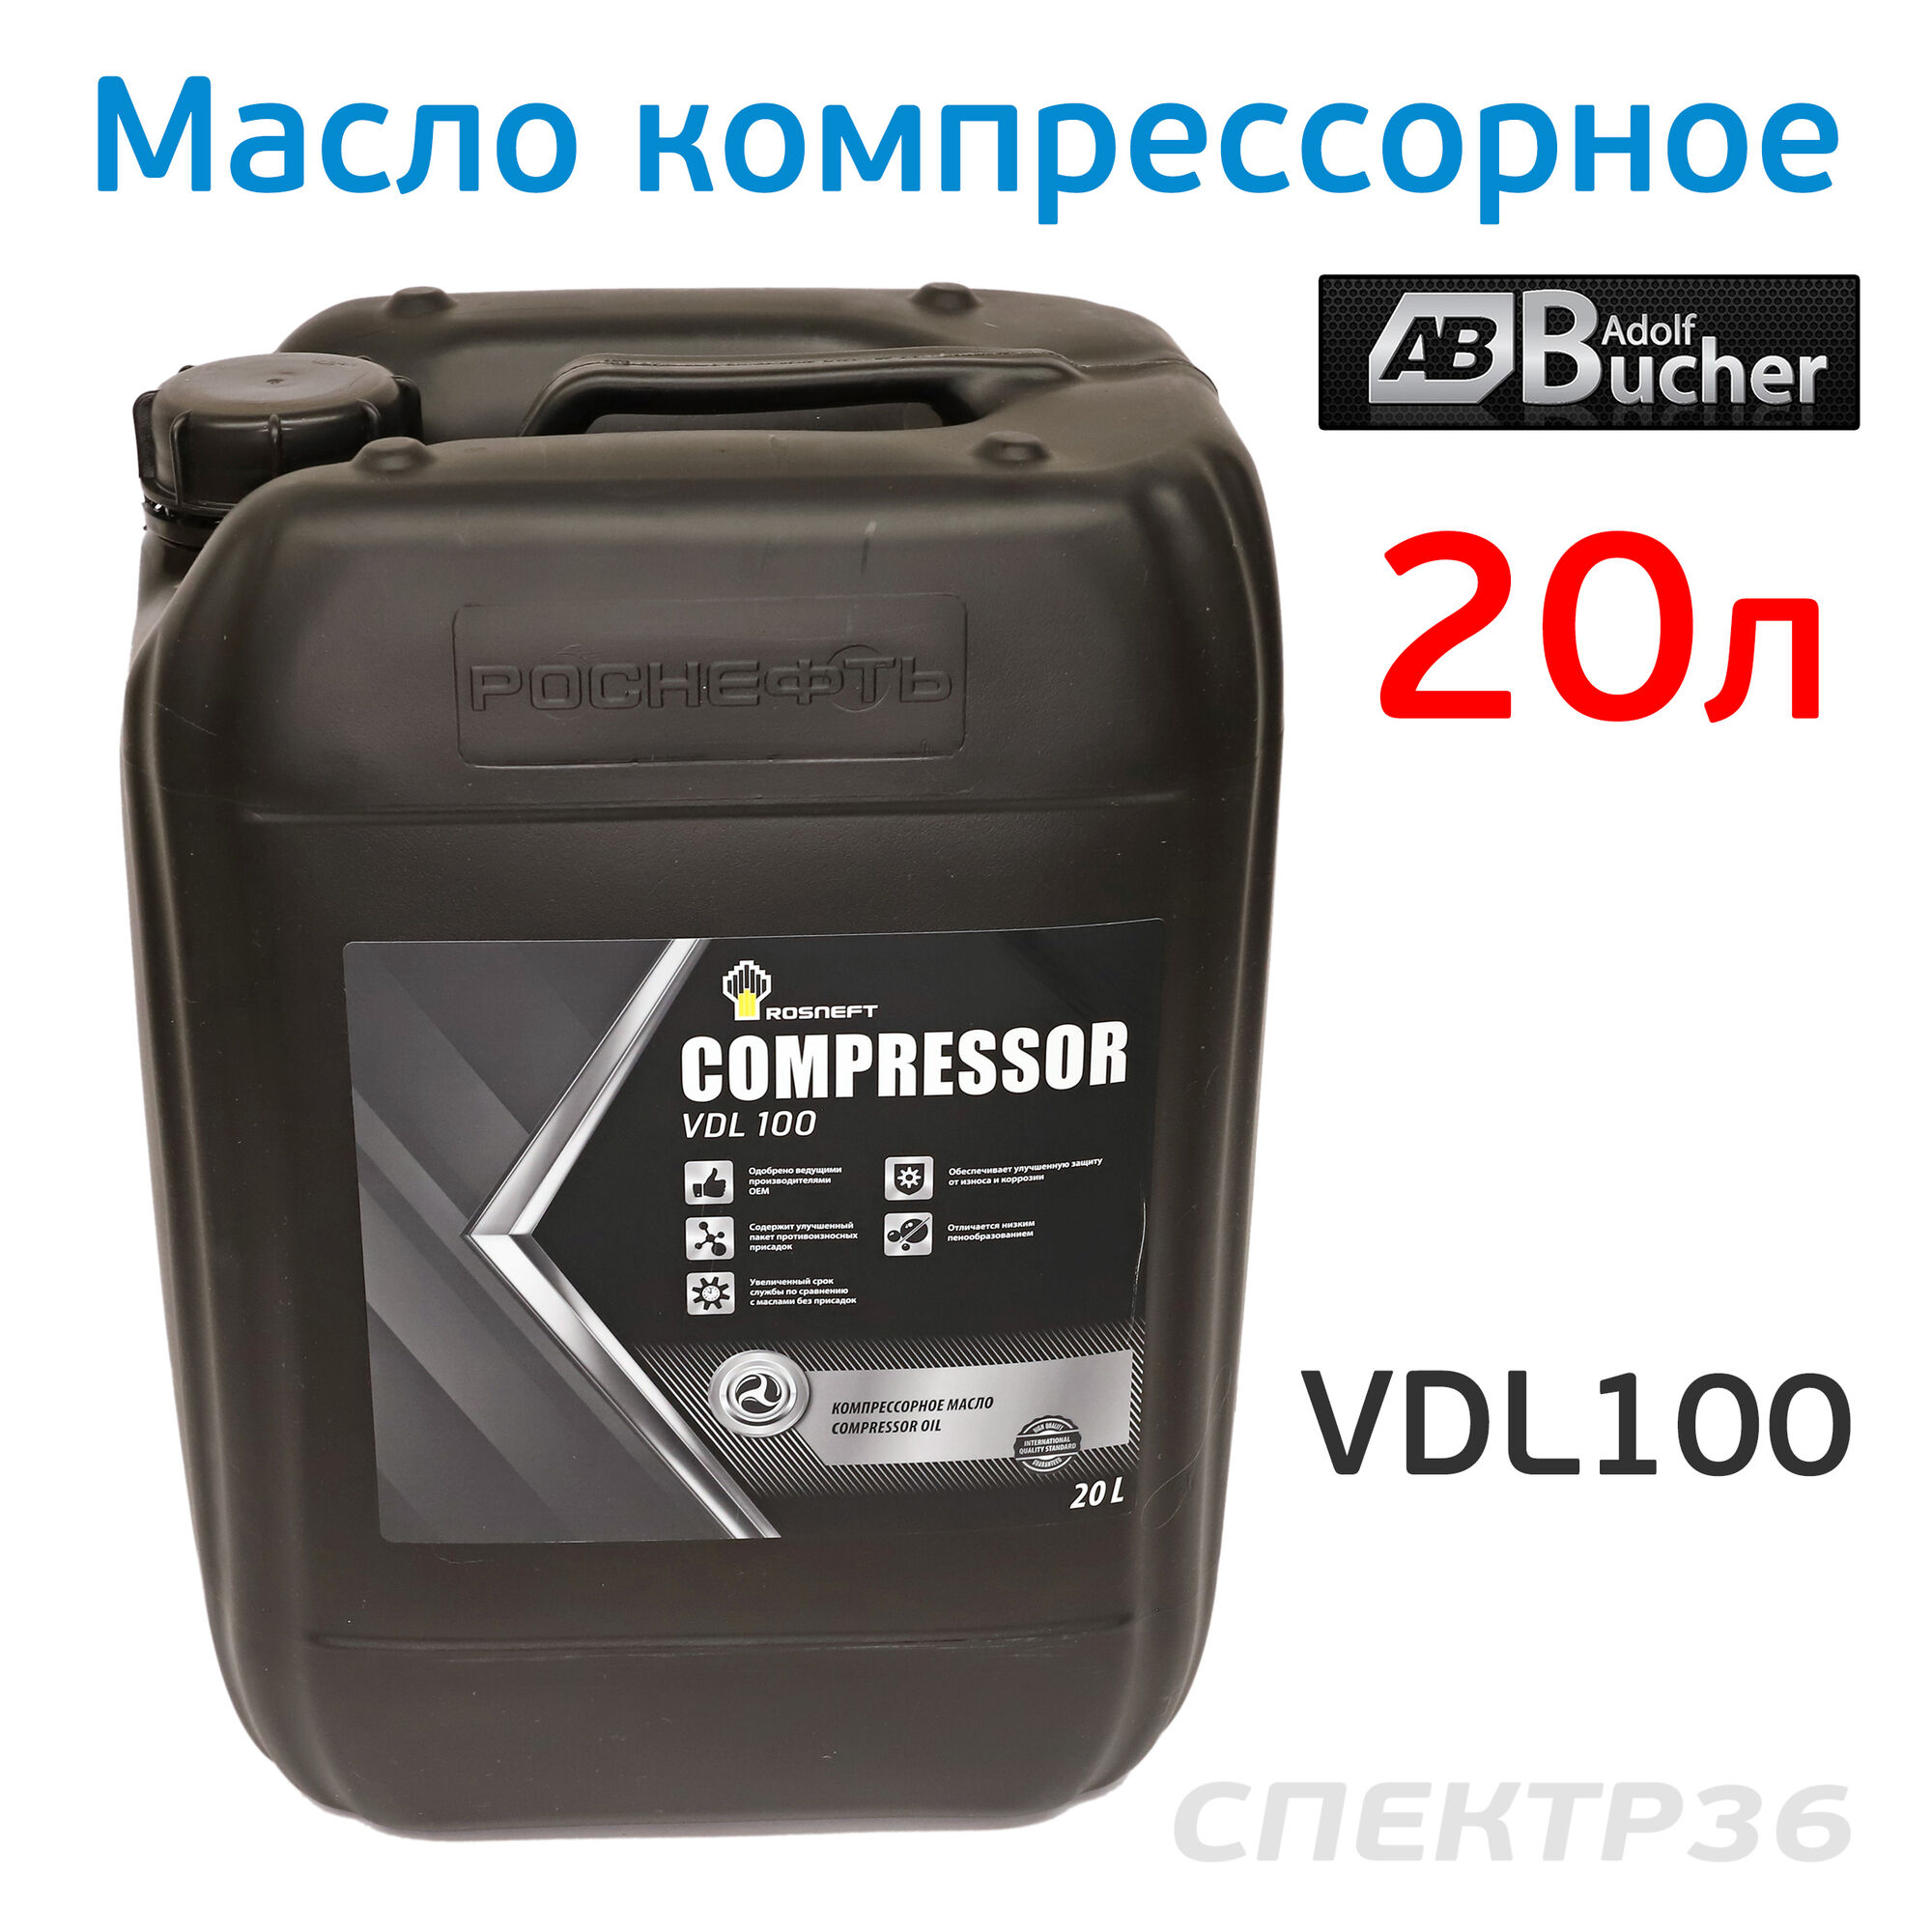 Масло компрессорное Rosneft Compressor (20л) Compressor oil